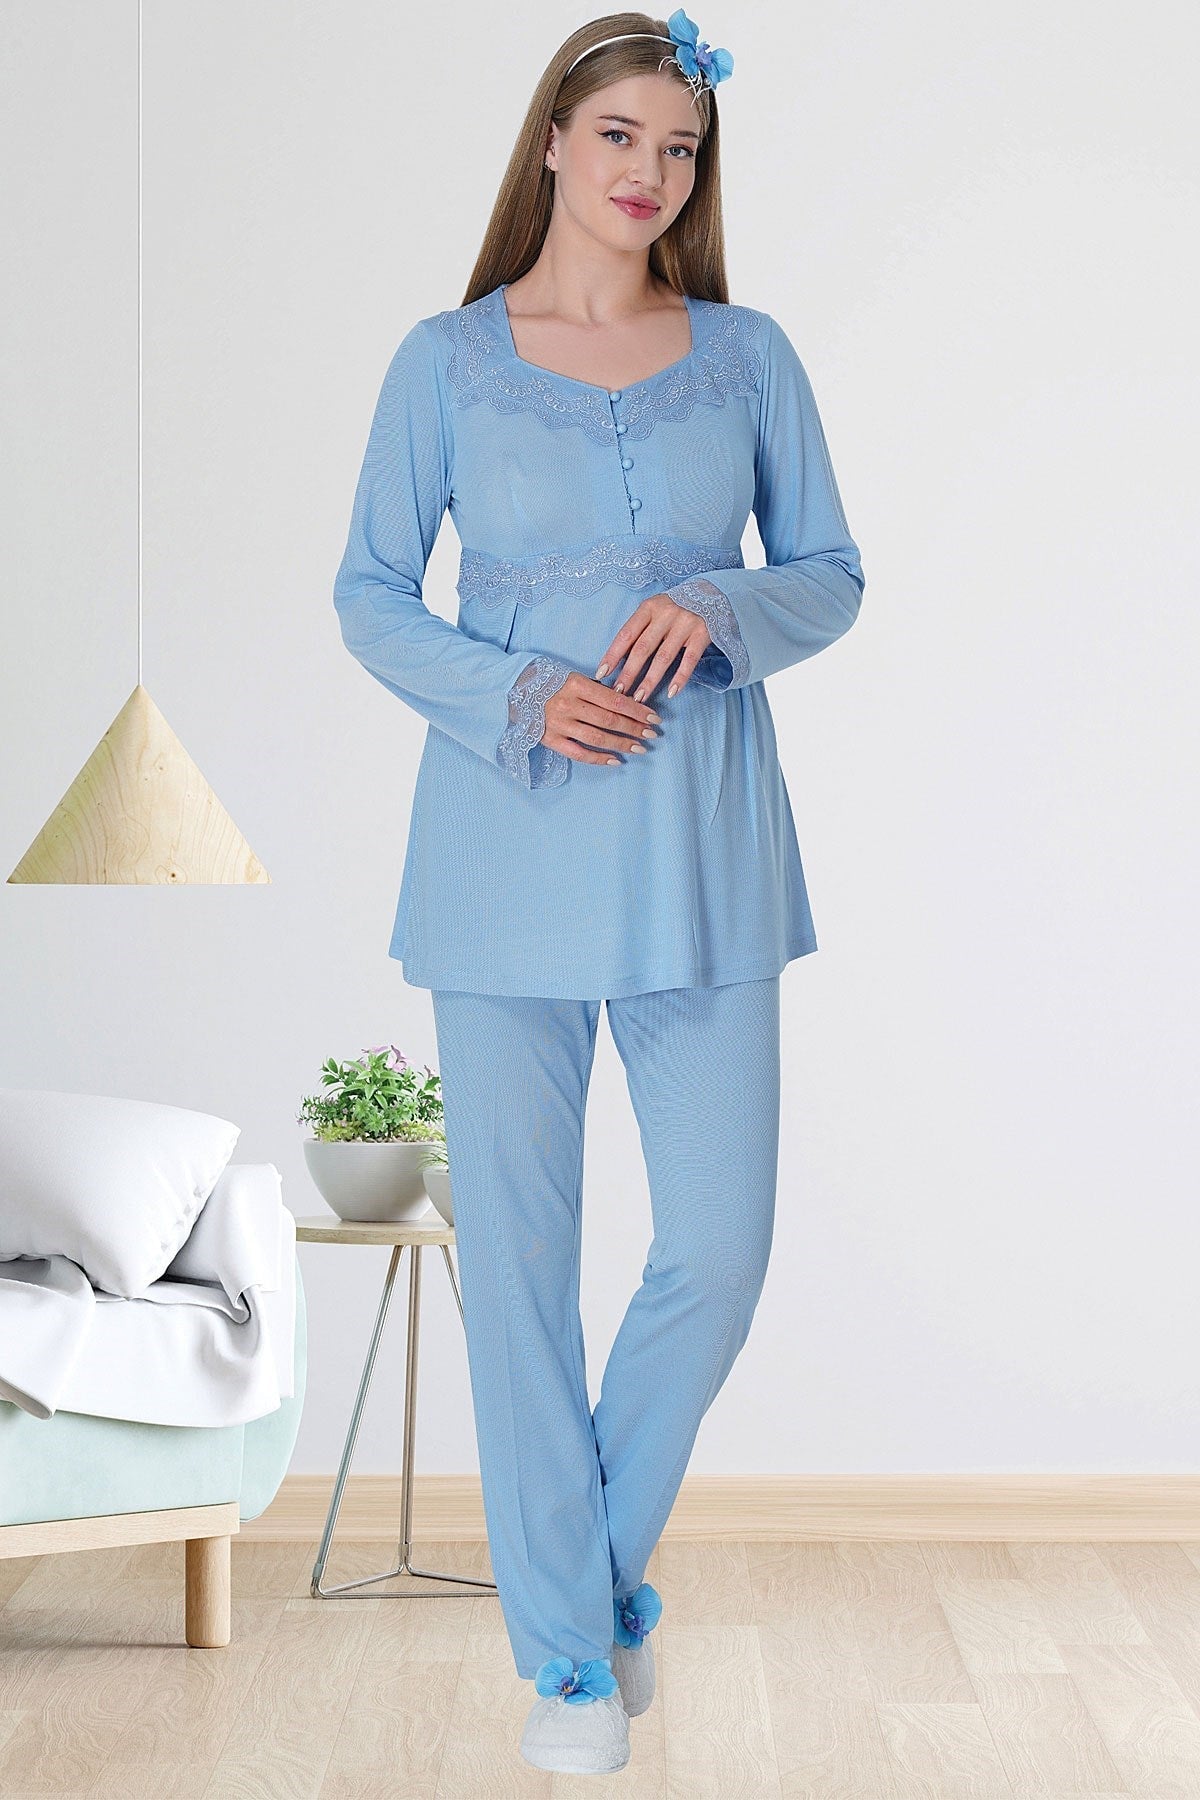 Lace Detailed Maternity & Nursing Pajamas Blue - 5711